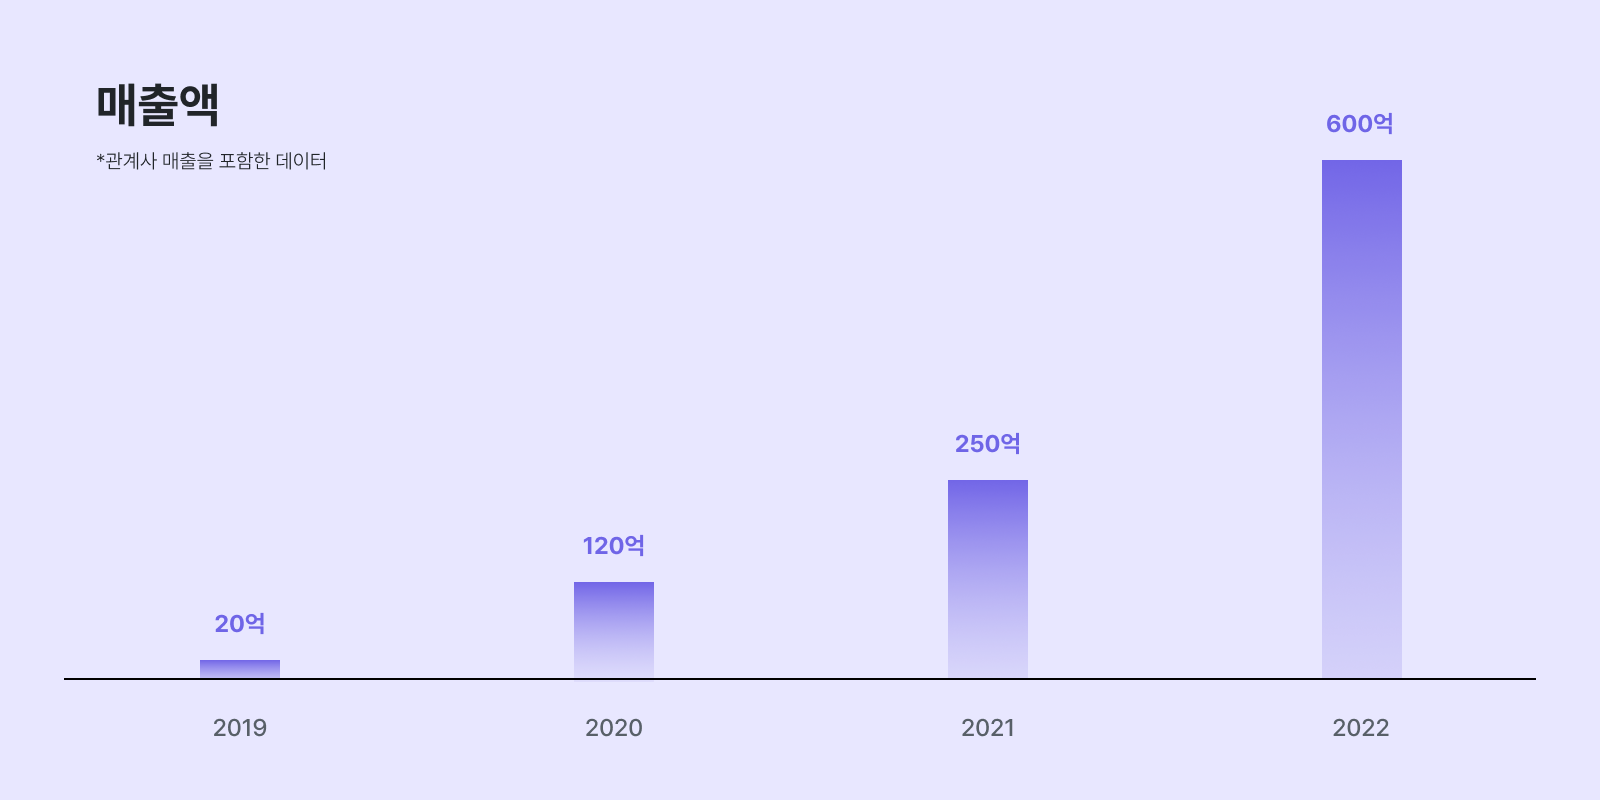 이삼오구는 2022년 600억 연매출을 기록했습니다